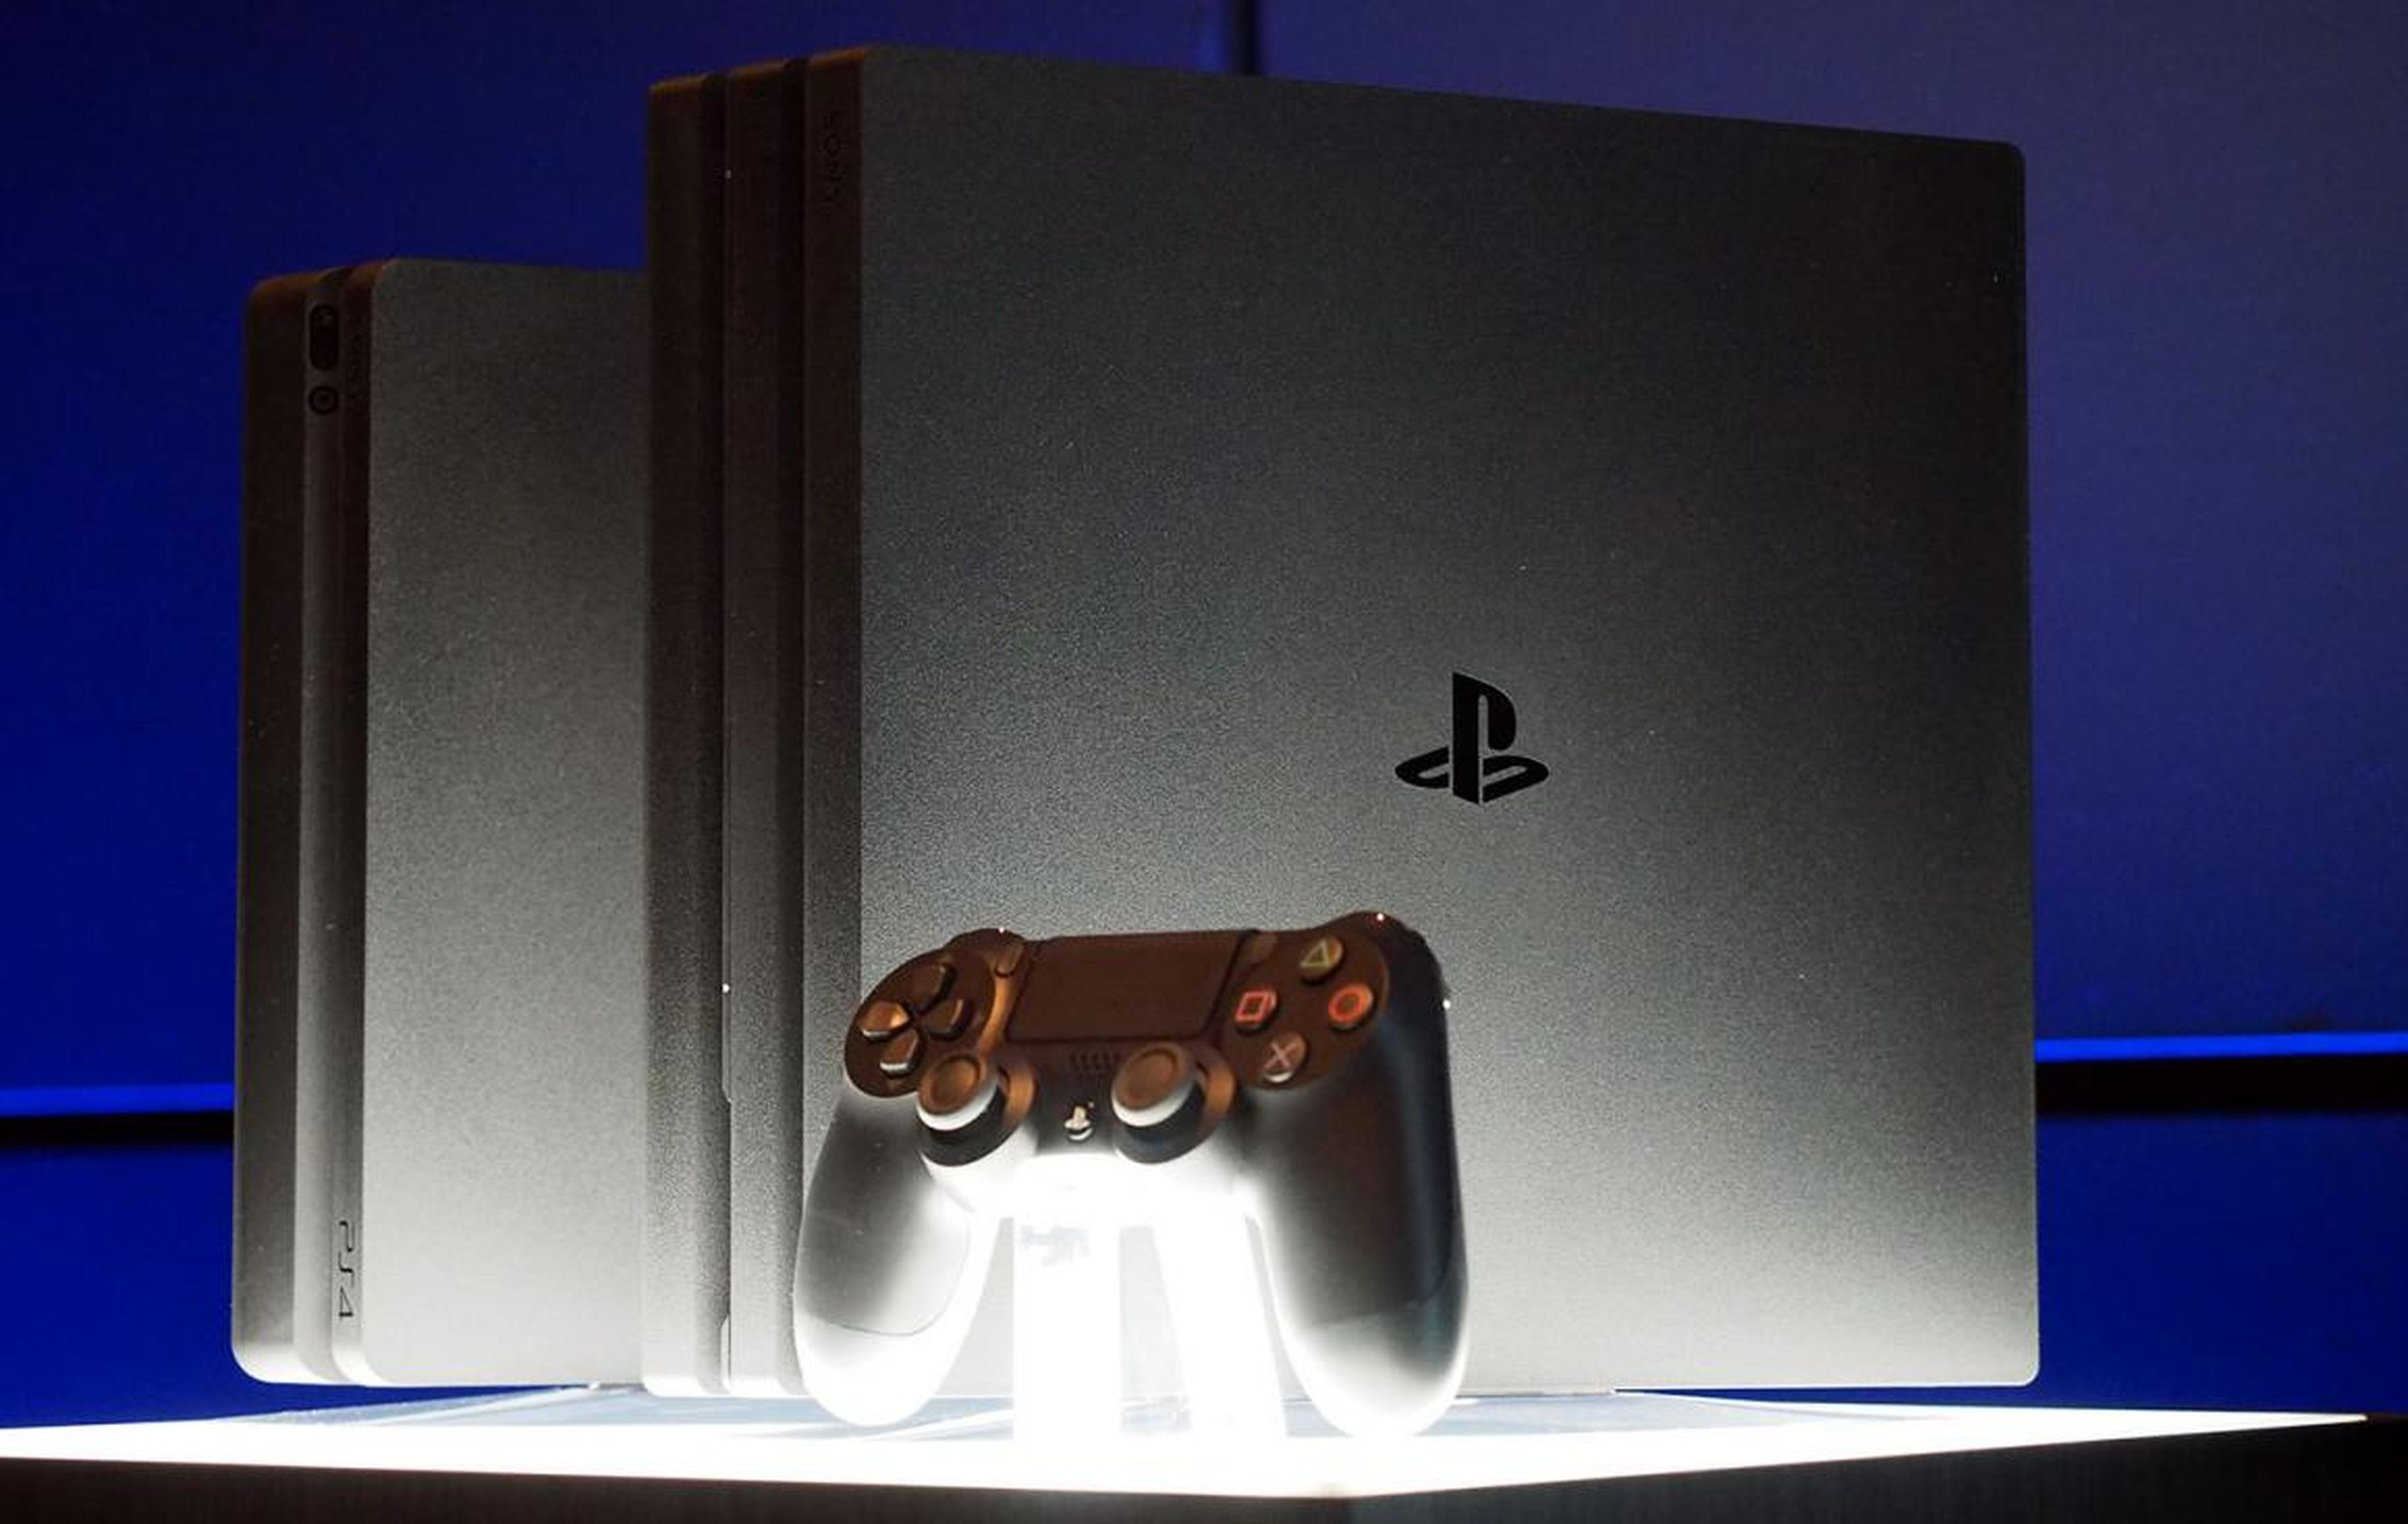 La PlayStation 4 (izquierda) y la PlayStation 4 Pro (derecha).